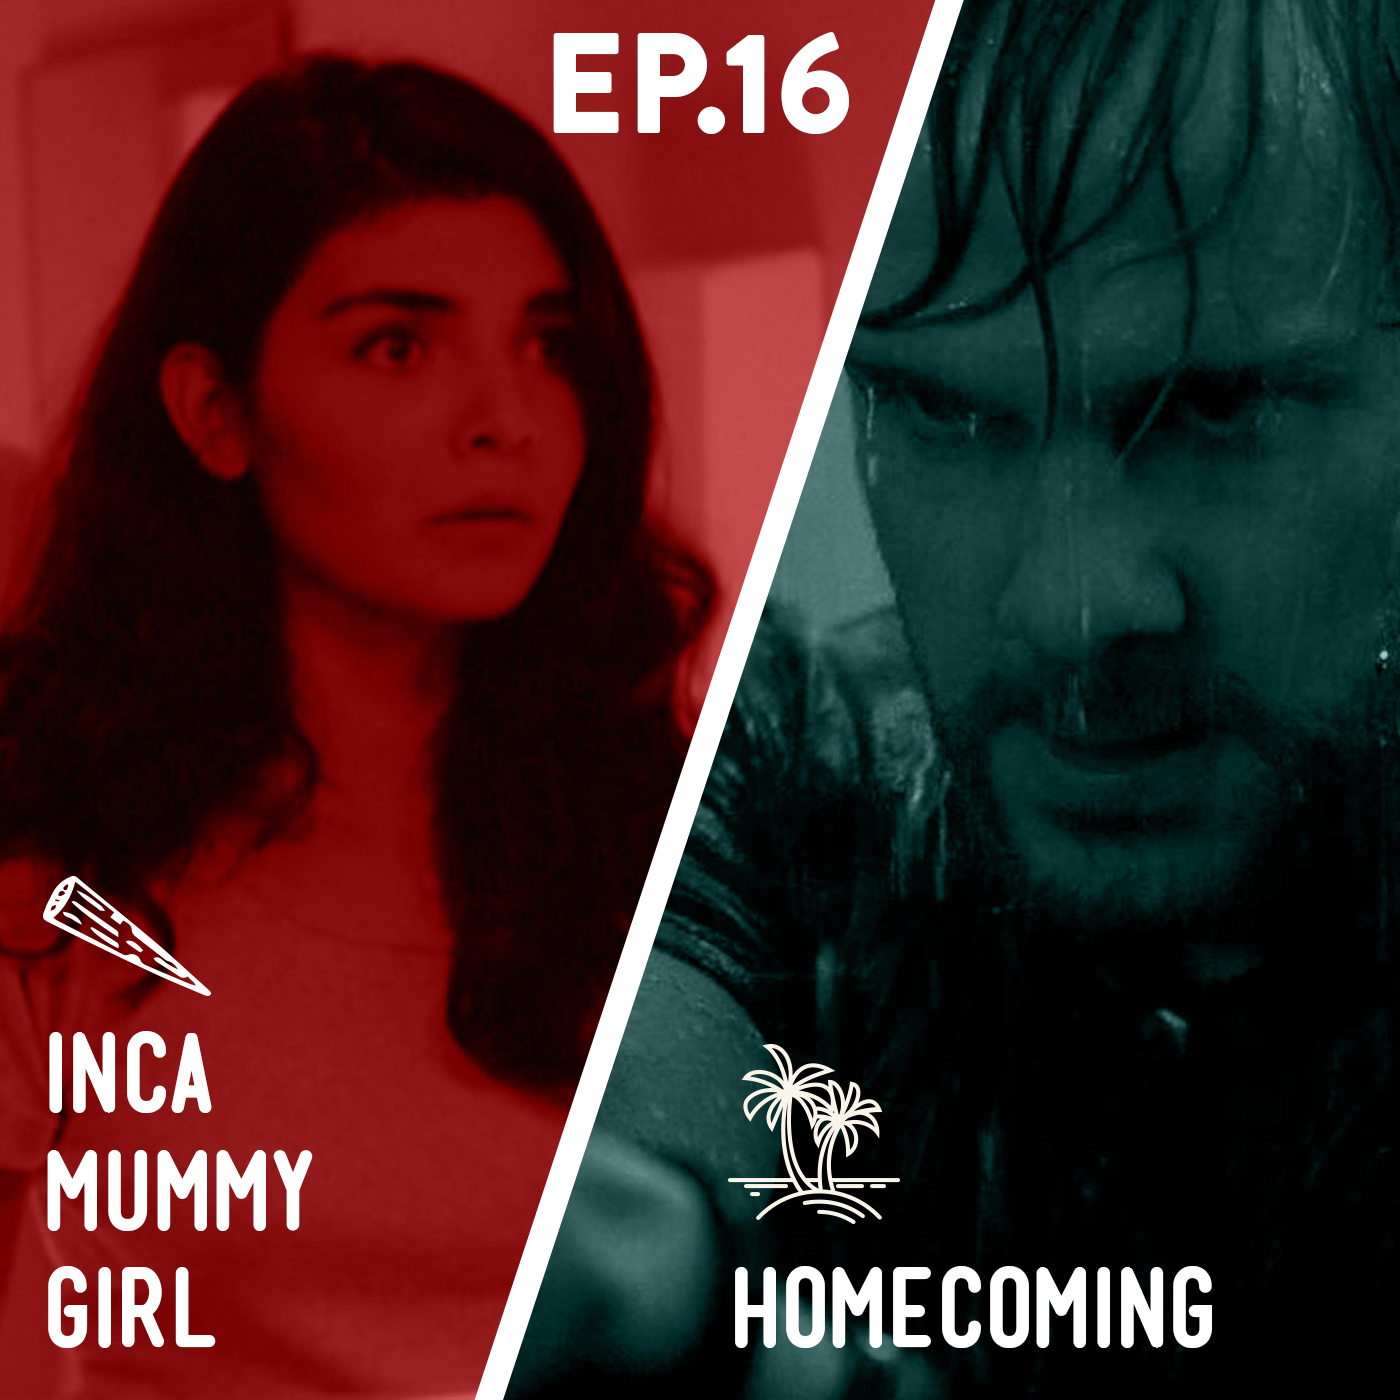 16 - Inca Mummy Girl / Homecoming